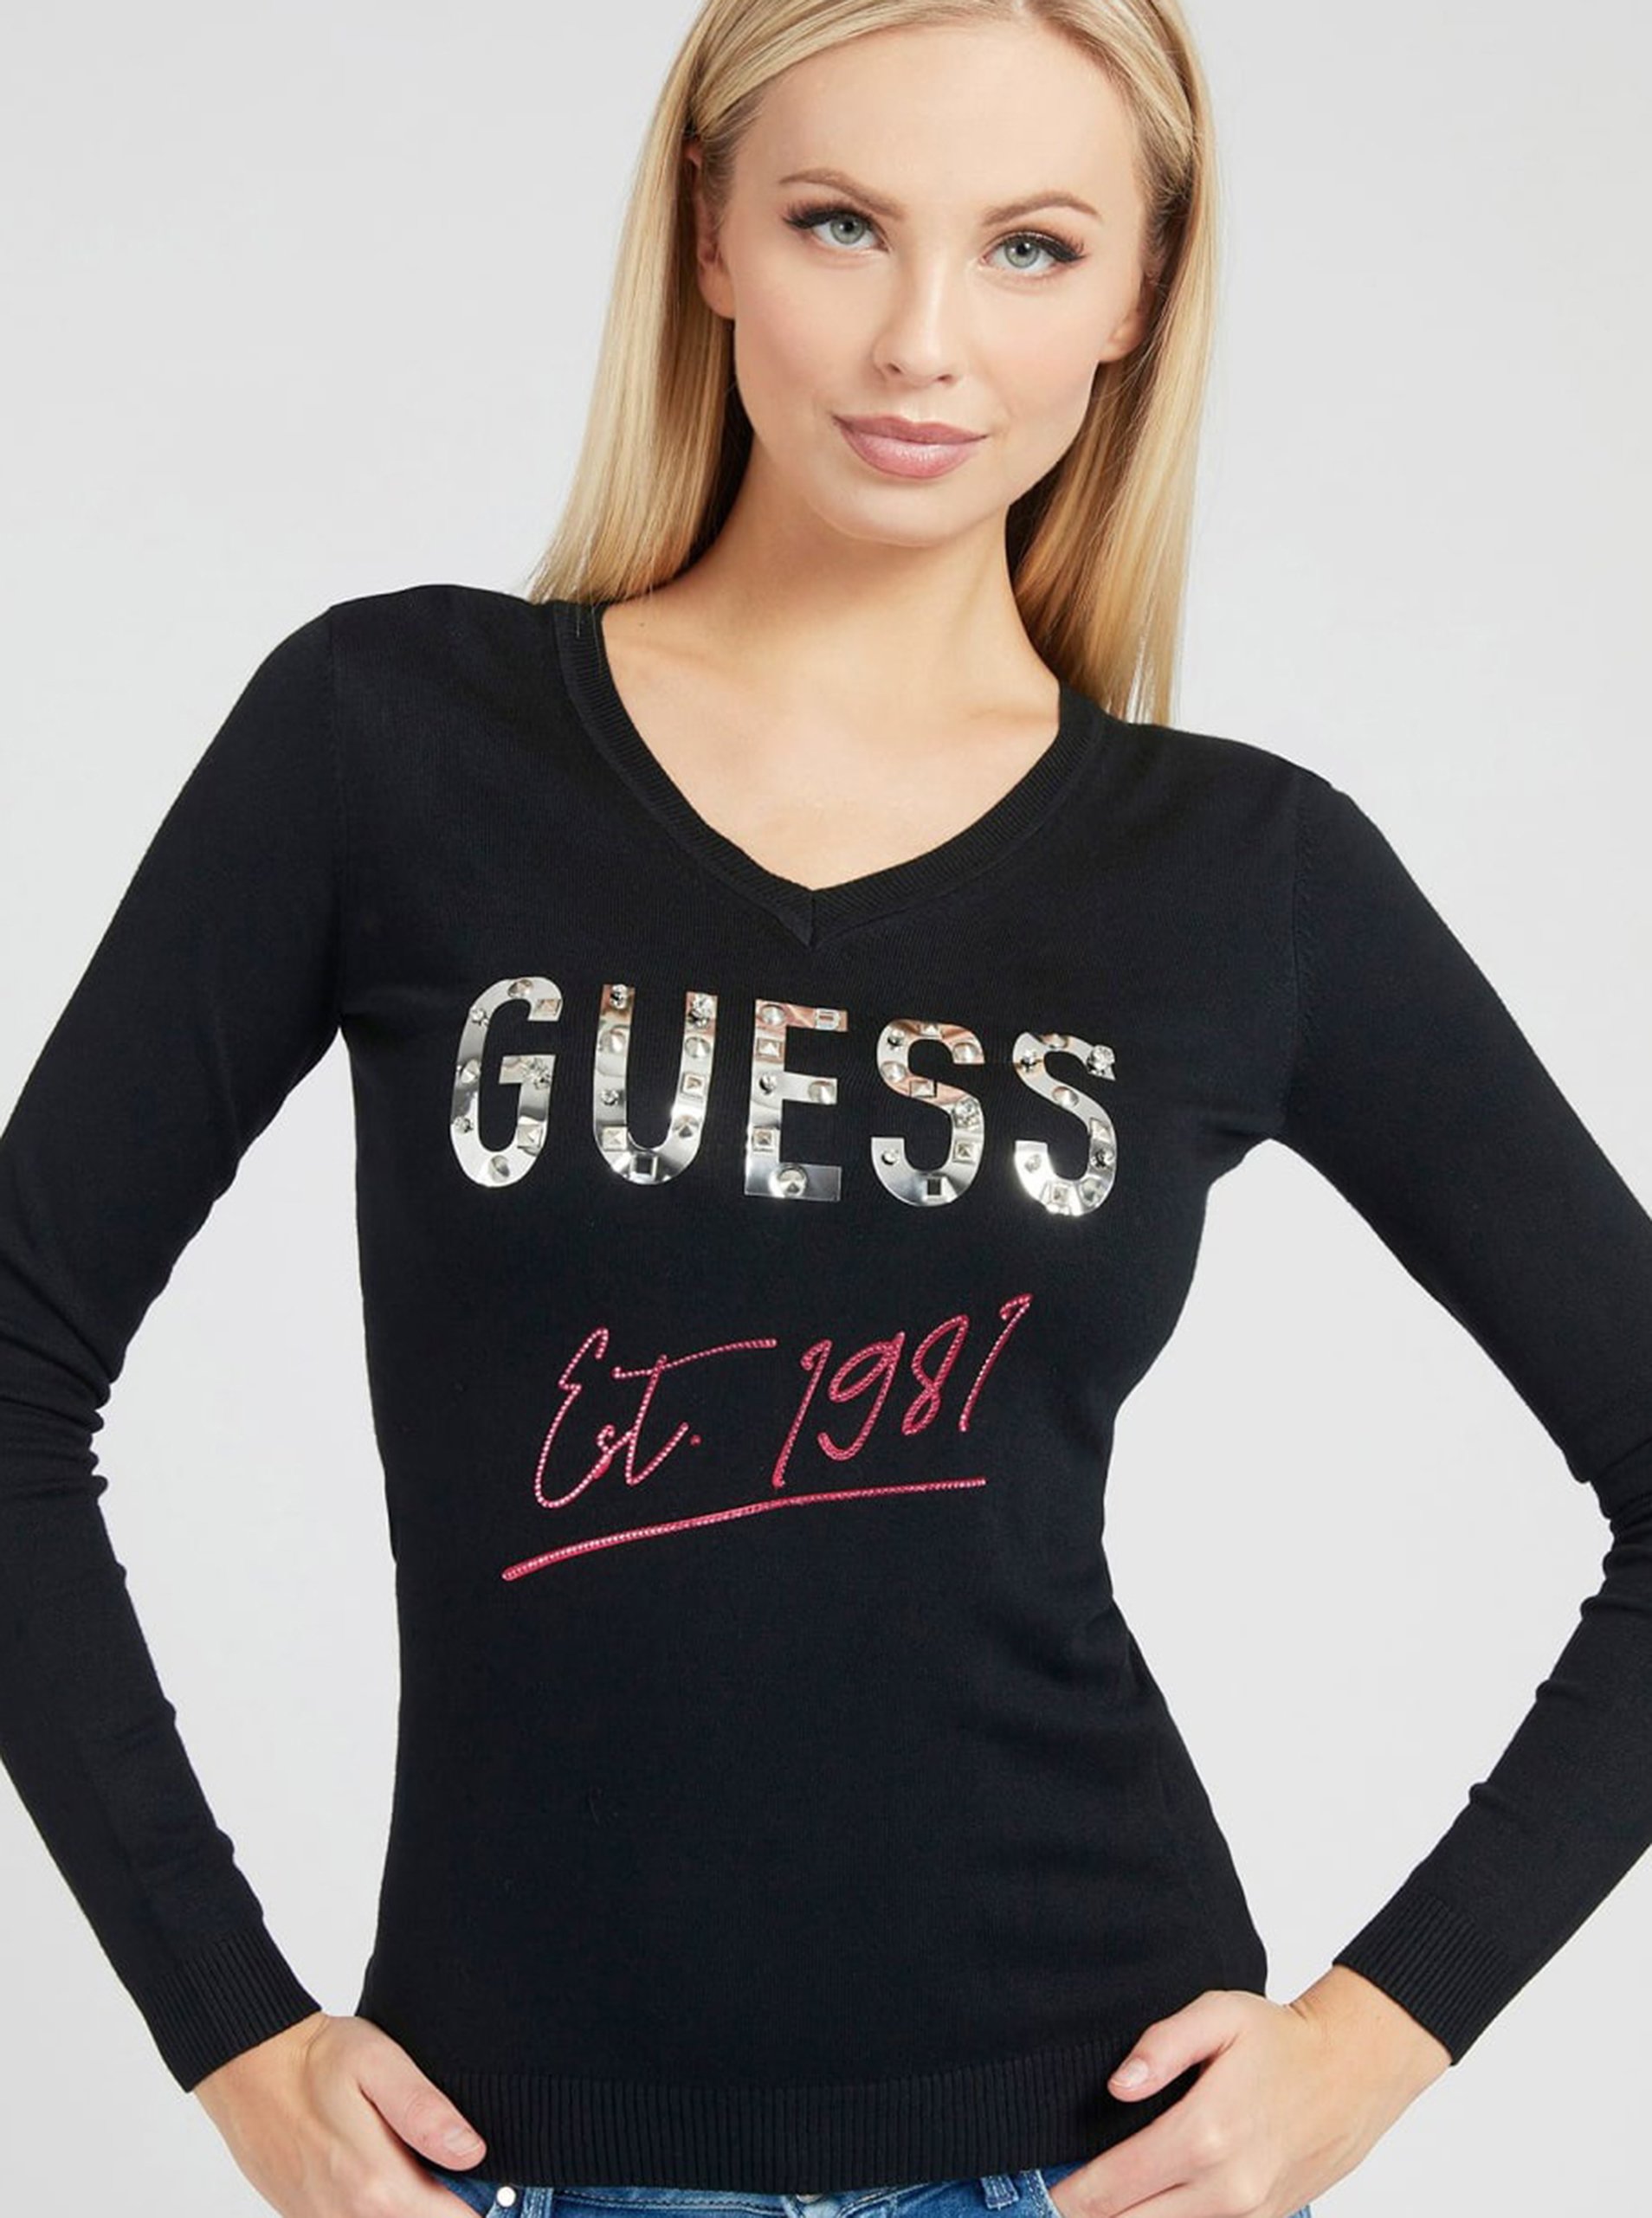 E-shop Černý dámský svetr s nápisem s ozdobnými detaily Guess Logo V Neck